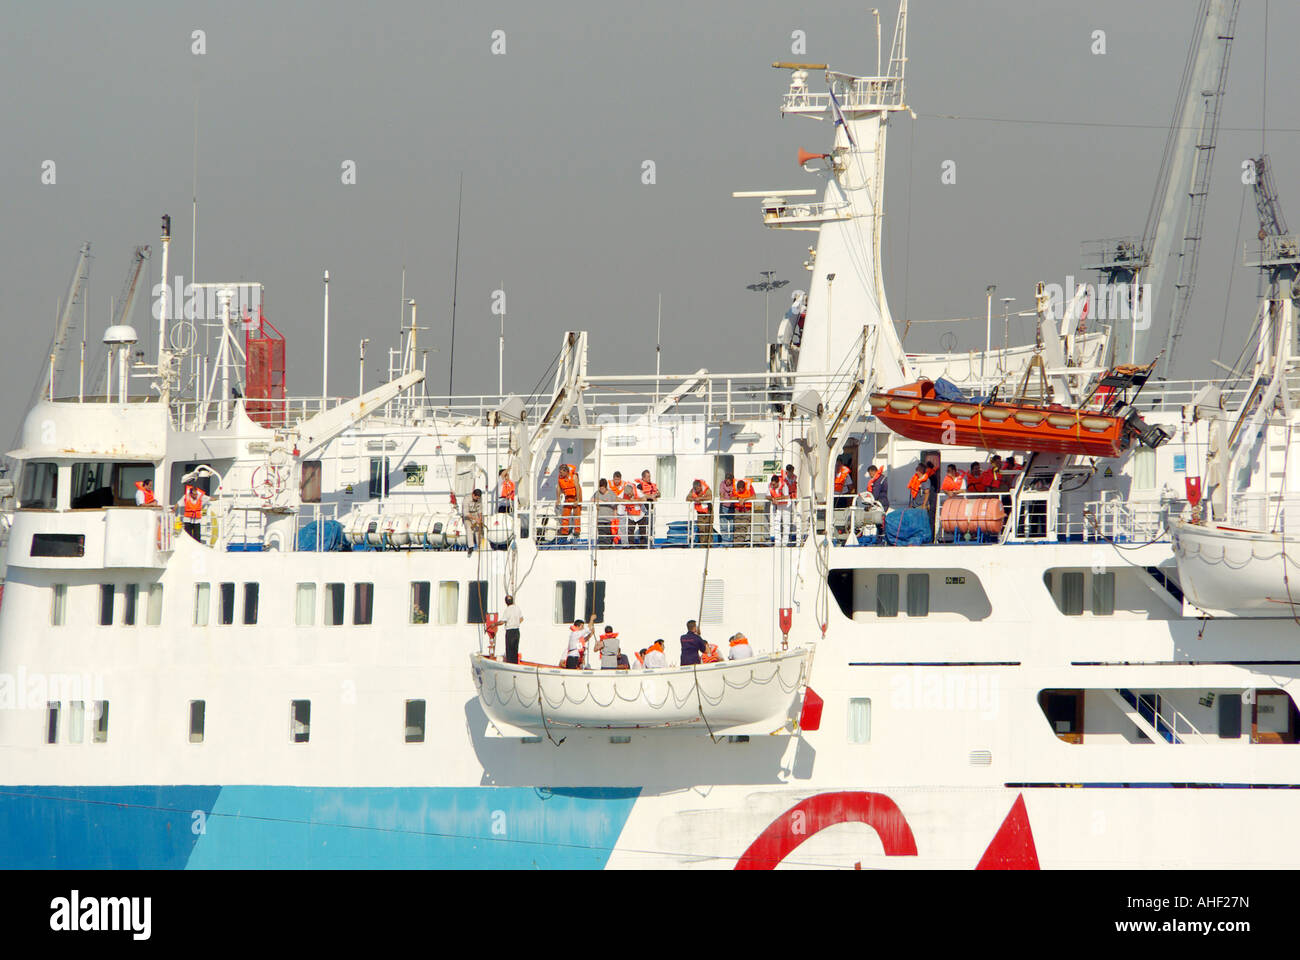 Thessaloniki Hafen vertäut Fähre crew üben Notevakuierung bohren Senken ein Rettungsboot mit Menschen an Bord trägt Schwimmweste Griechenland Stockfoto